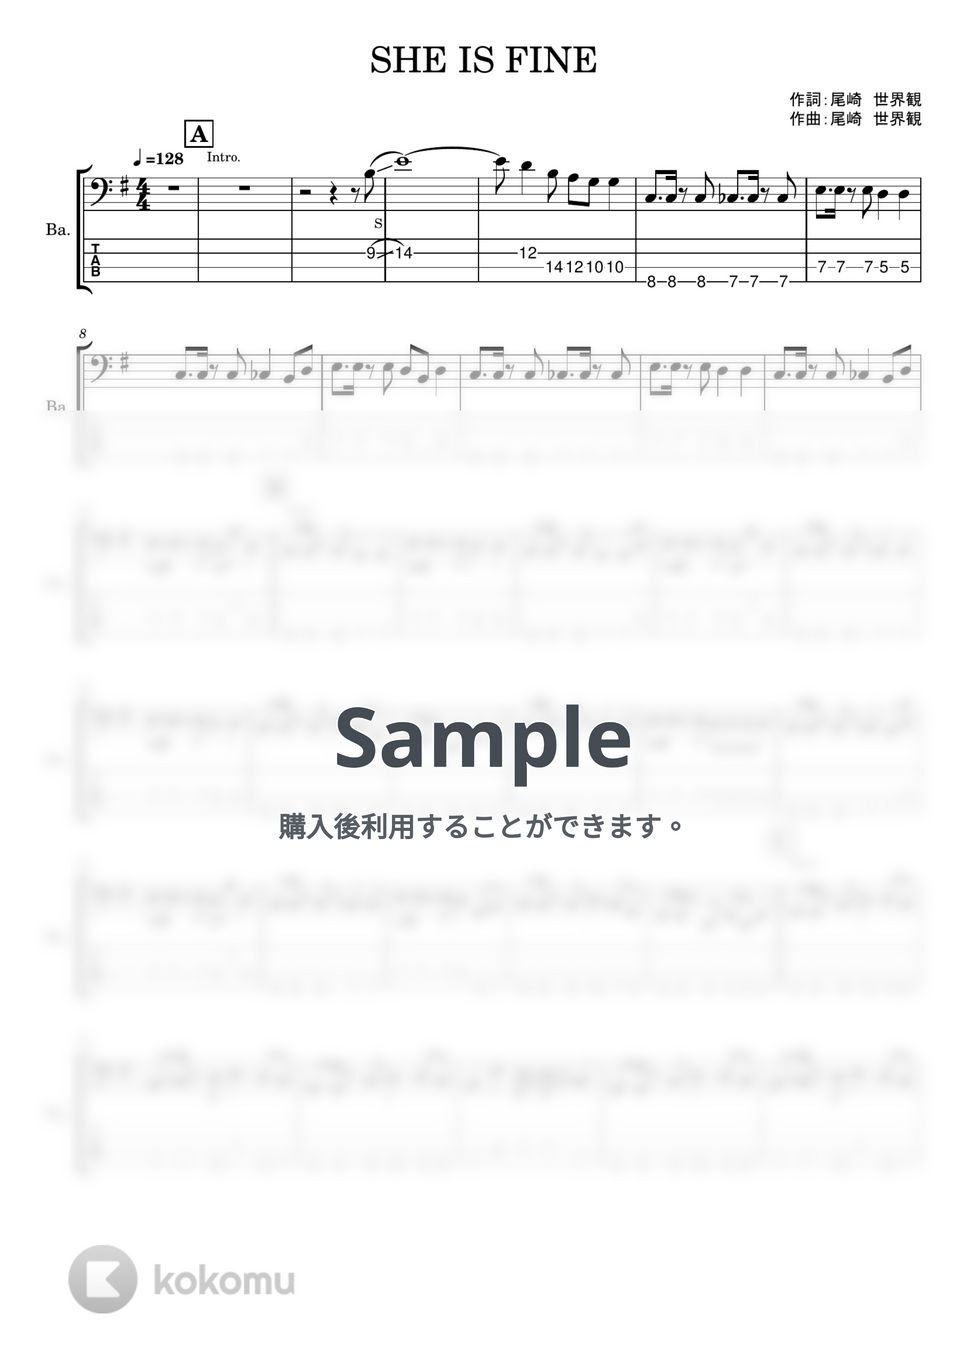 クリープハイプ - SHE IS FINE (ベースTAB譜) by やまさんルーム